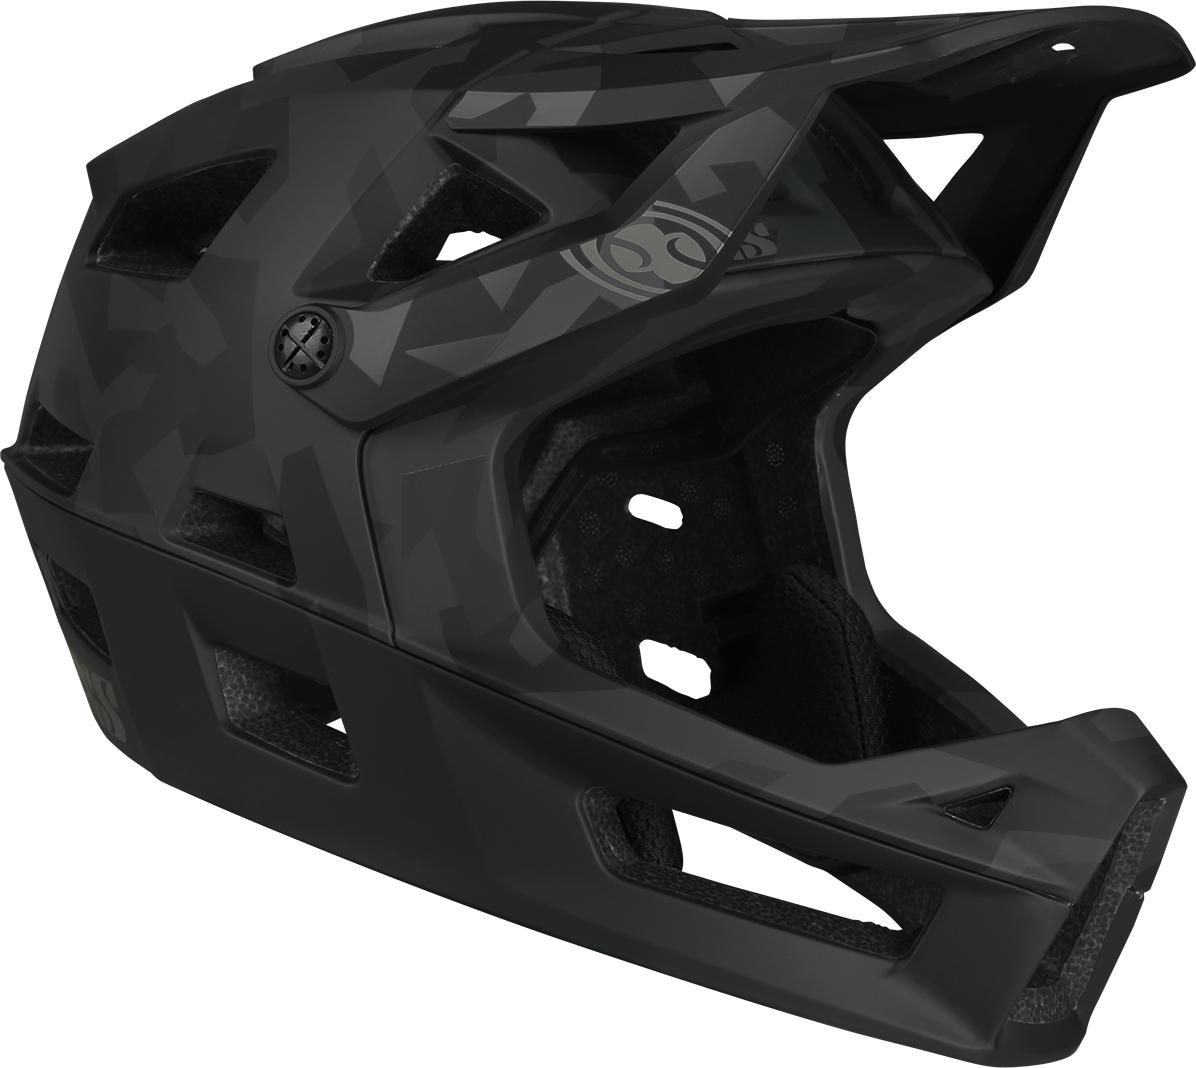 Ixs Trigger Ff Mips Camo Helmet - Black Camo